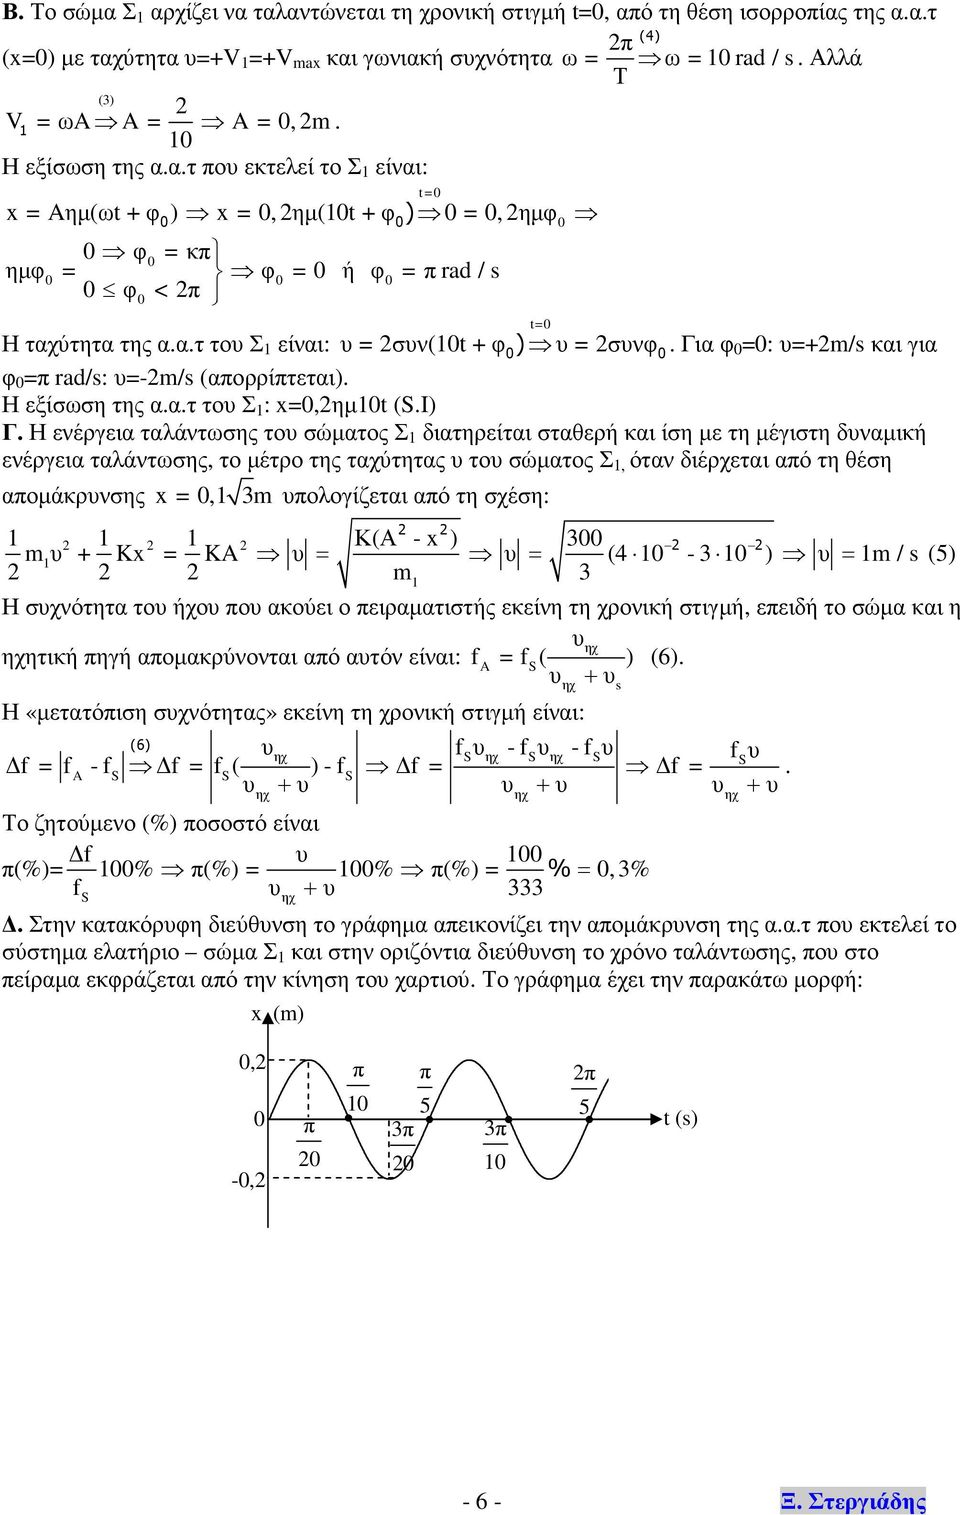 Για φ =: υ=+m/s και για φ = ad/s: υ=-m/s (αορρίτεται). Η εξίσωση της α.α.τ του Σ : x=,ηµt (.I) Γ.